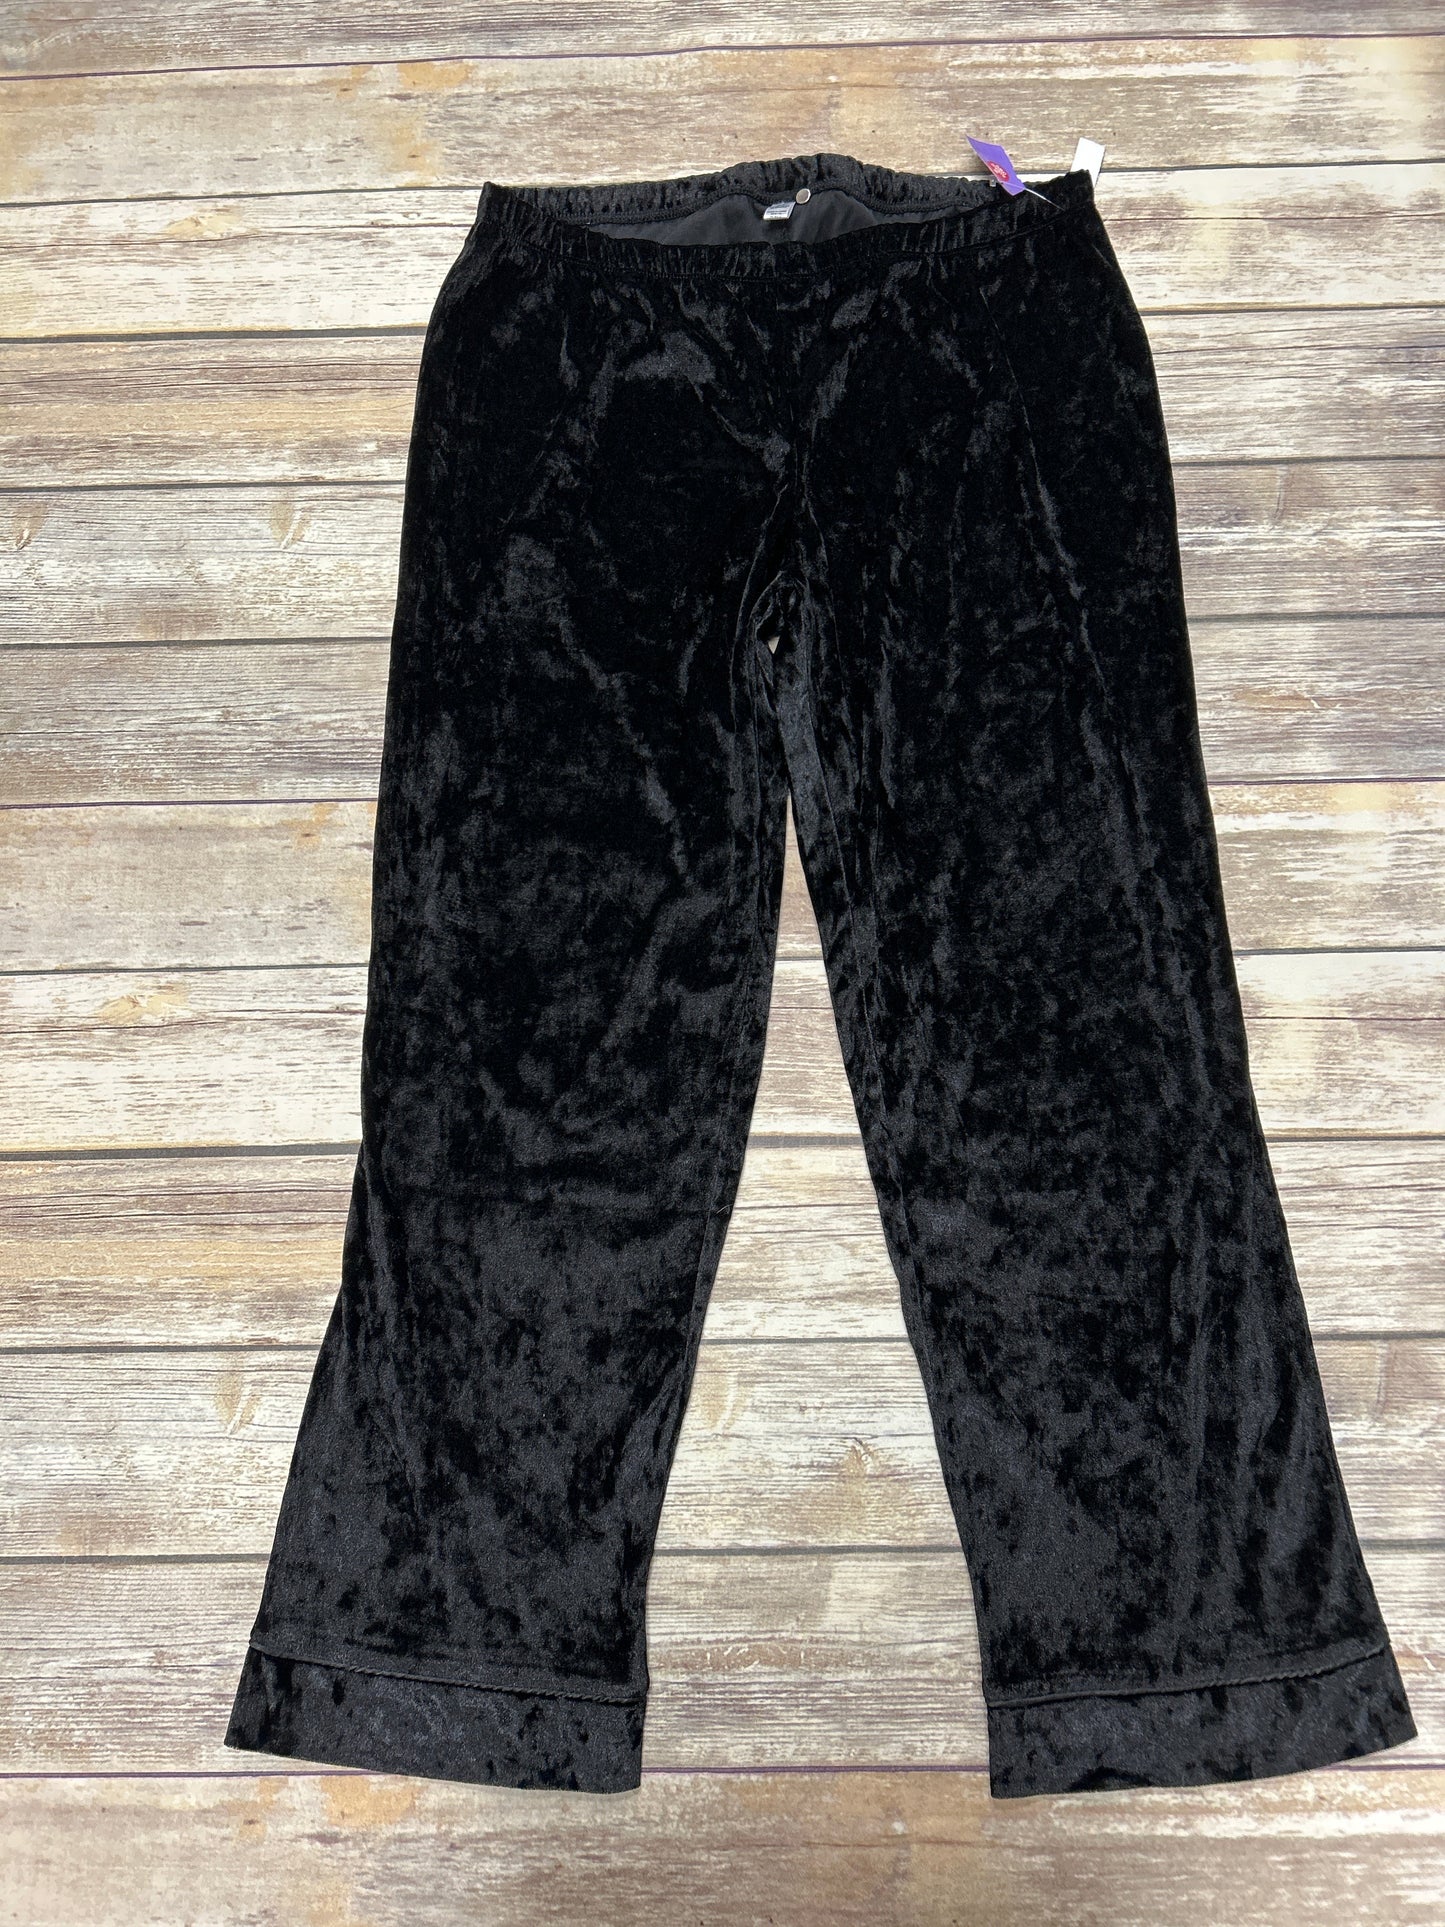 Black Pants Set 2pc Nicole By Nicole Miller, Size Xl